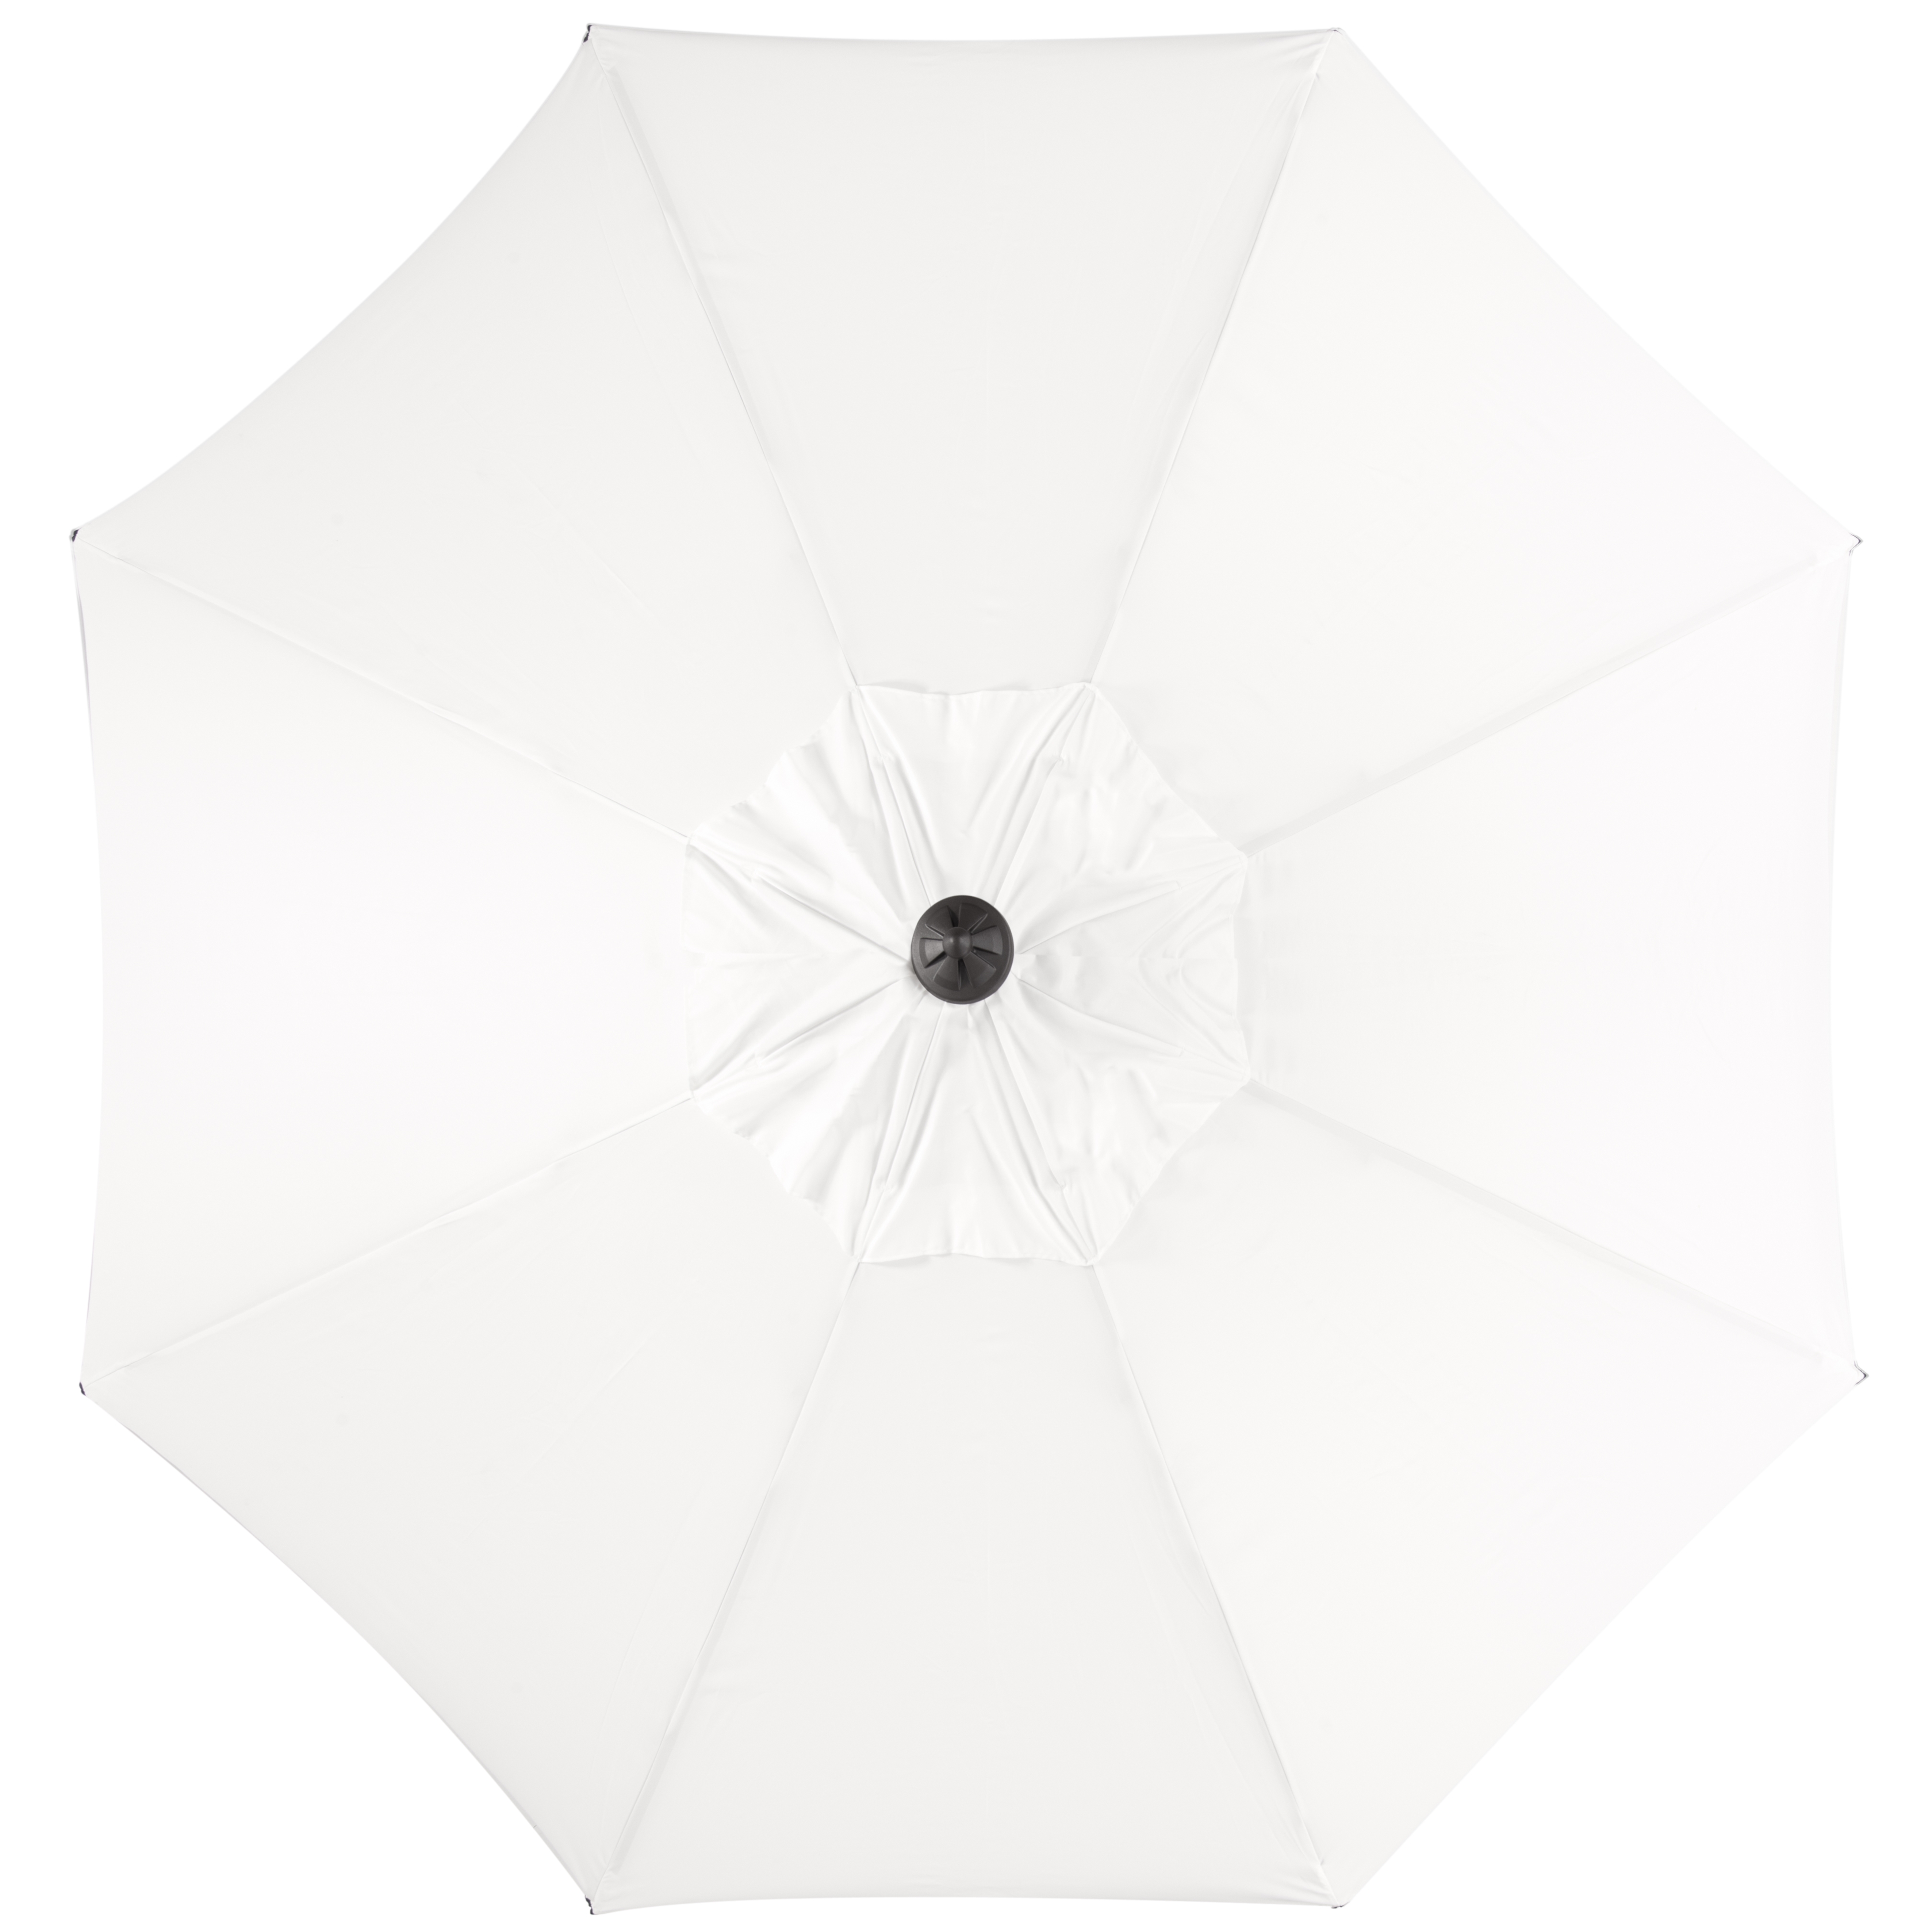 Venice Single Scallop 9Ft Crank Outdoor Push Button Tilt Umbrella - White/Black - Arlo Home - Image 3